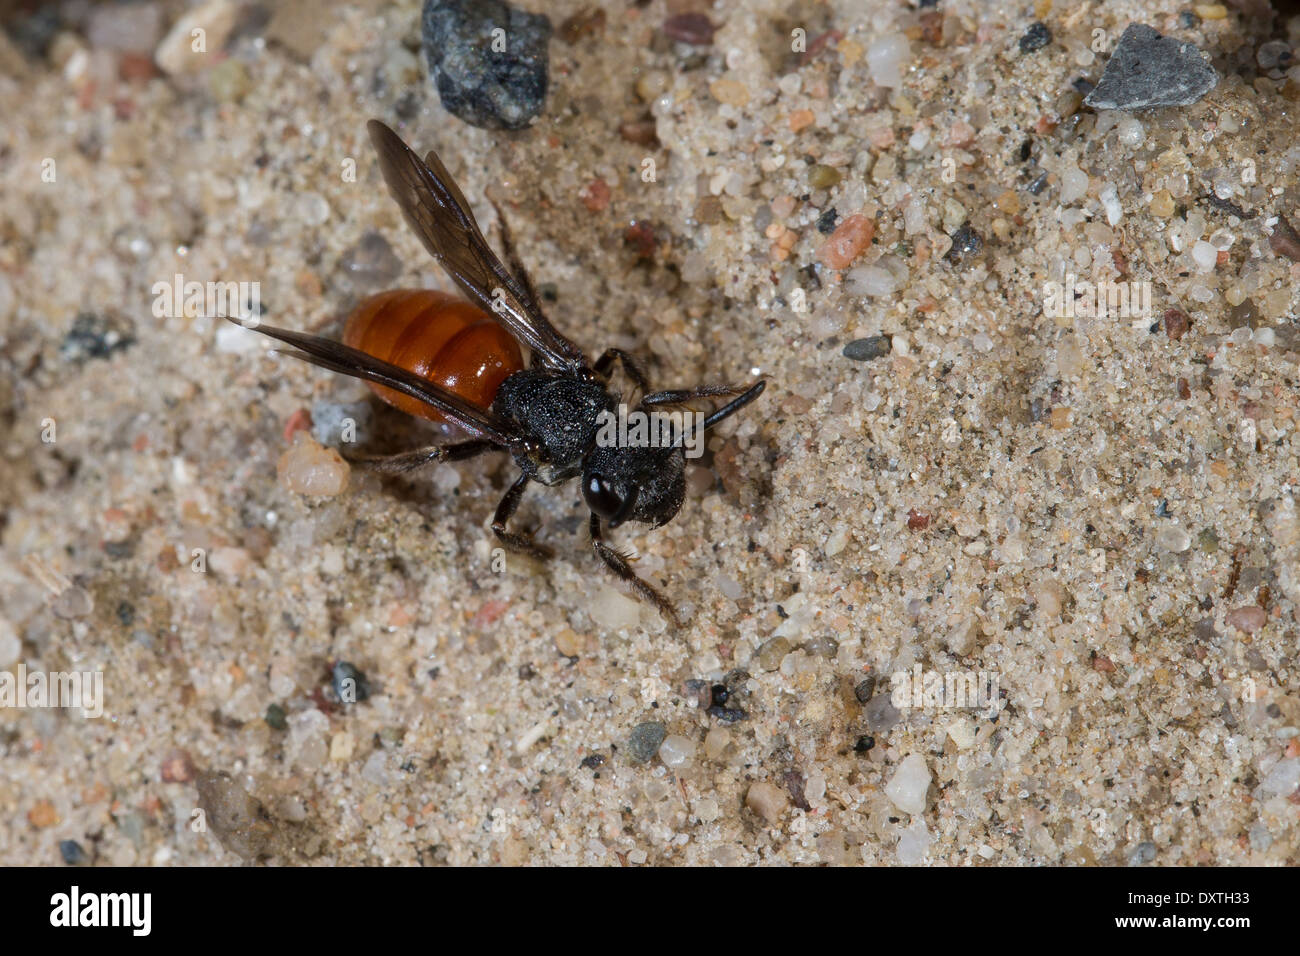 Sweat bee, Halictid Bee, Große Blutbiene, Auen-Buckelbiene, Kuckucksbiene, Sphecodes albilabris, Sphecodes fuscipennis Stock Photo